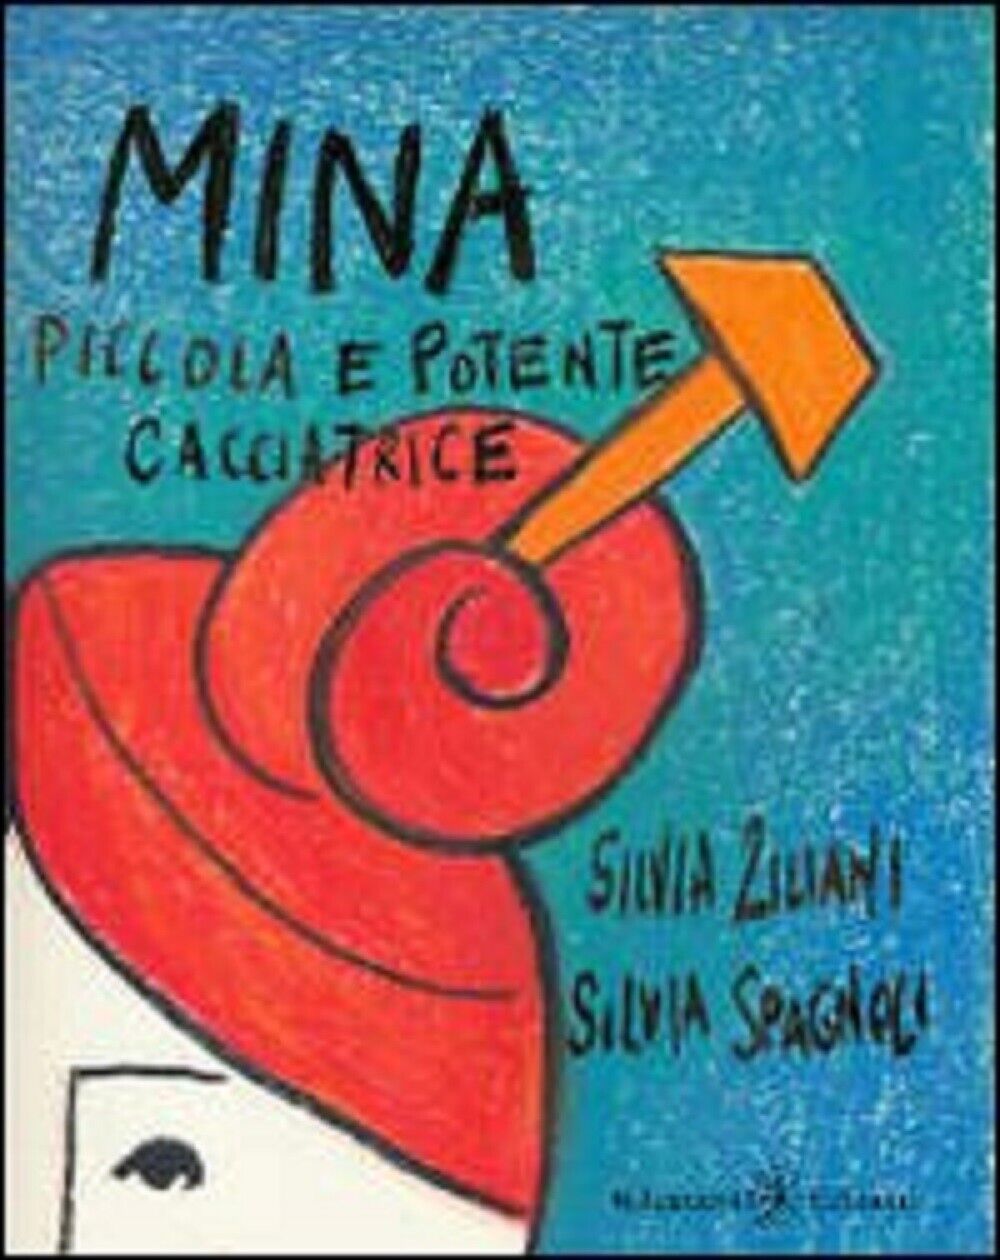  Mina, piccola e potente cacciatrice - Silvia Ziliani, Silvia Spagnoli,  2020